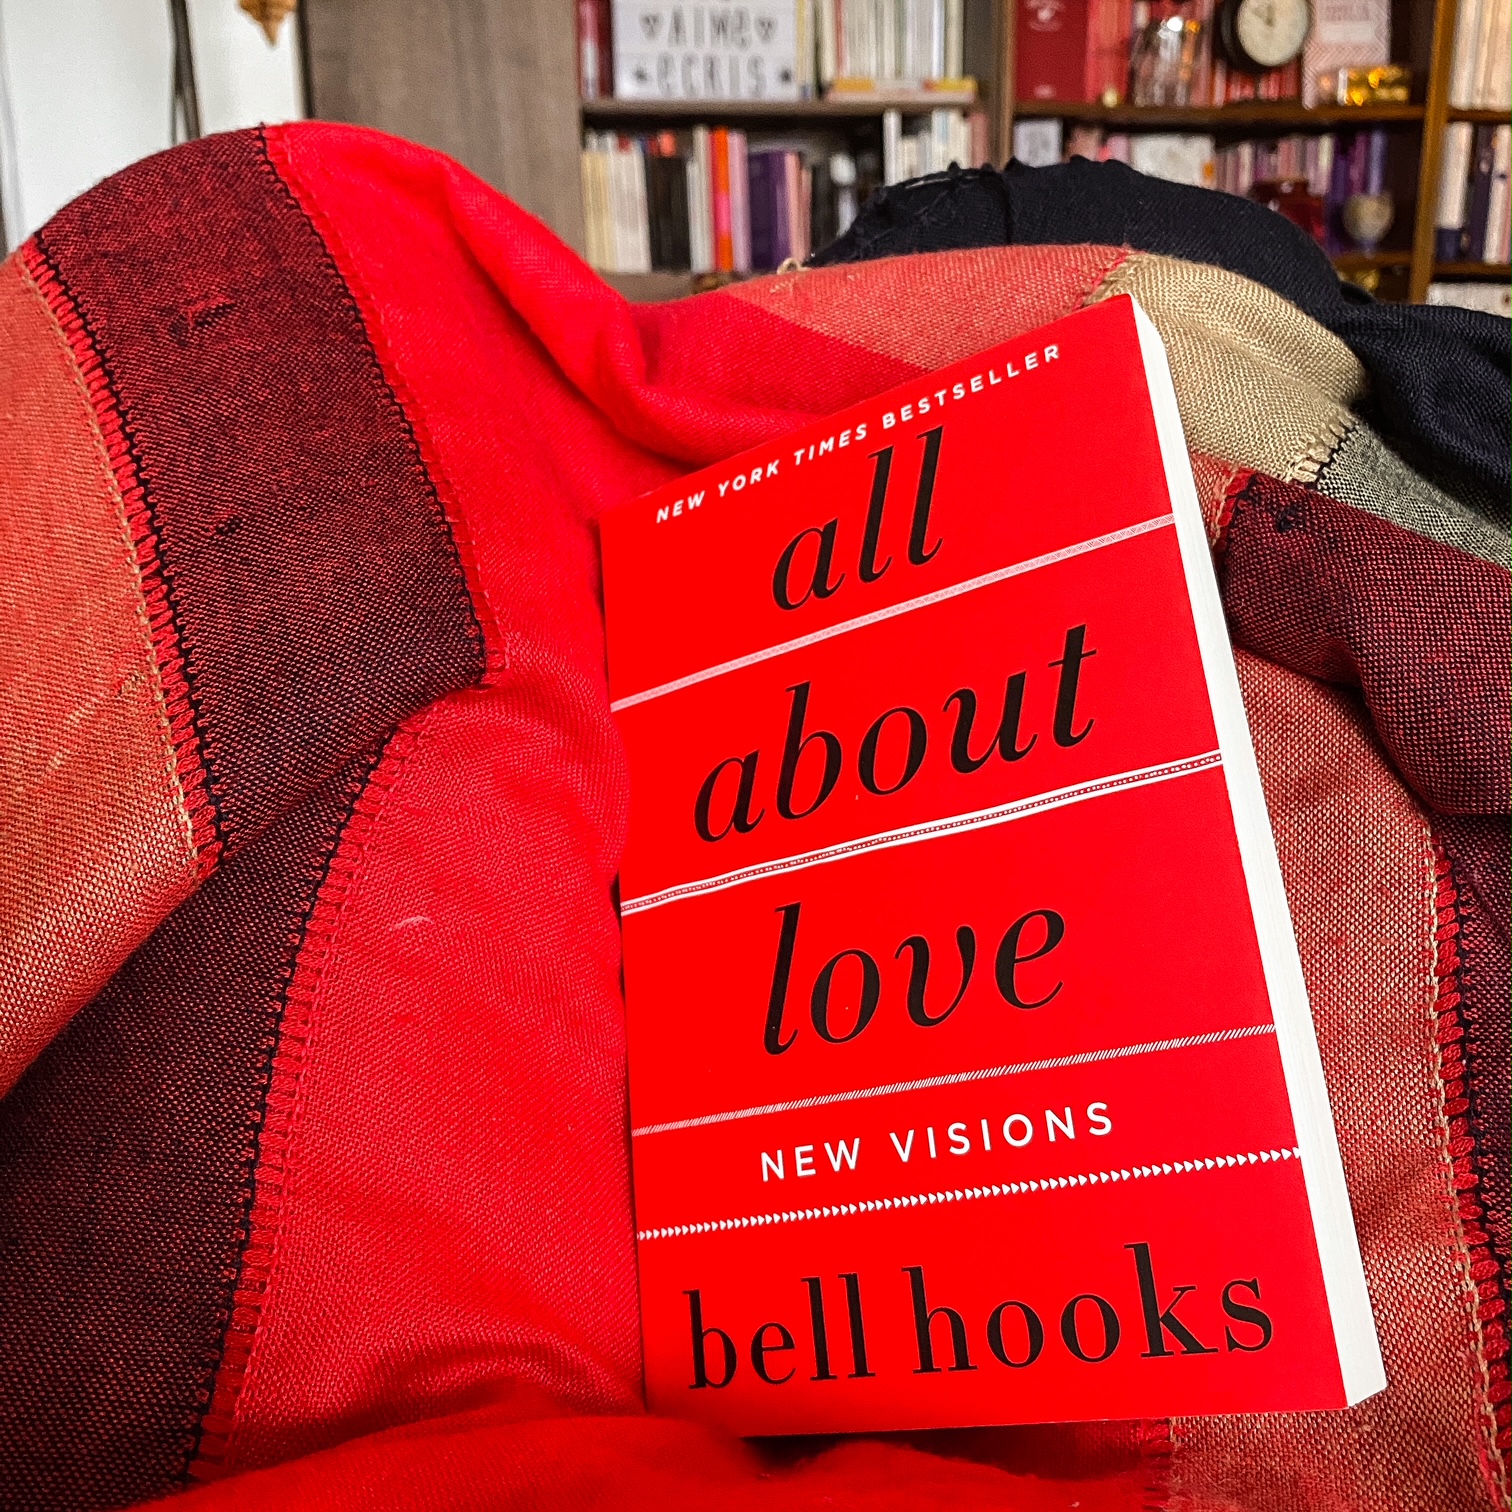 All about Love, de bell hooks : éthique de l'amour